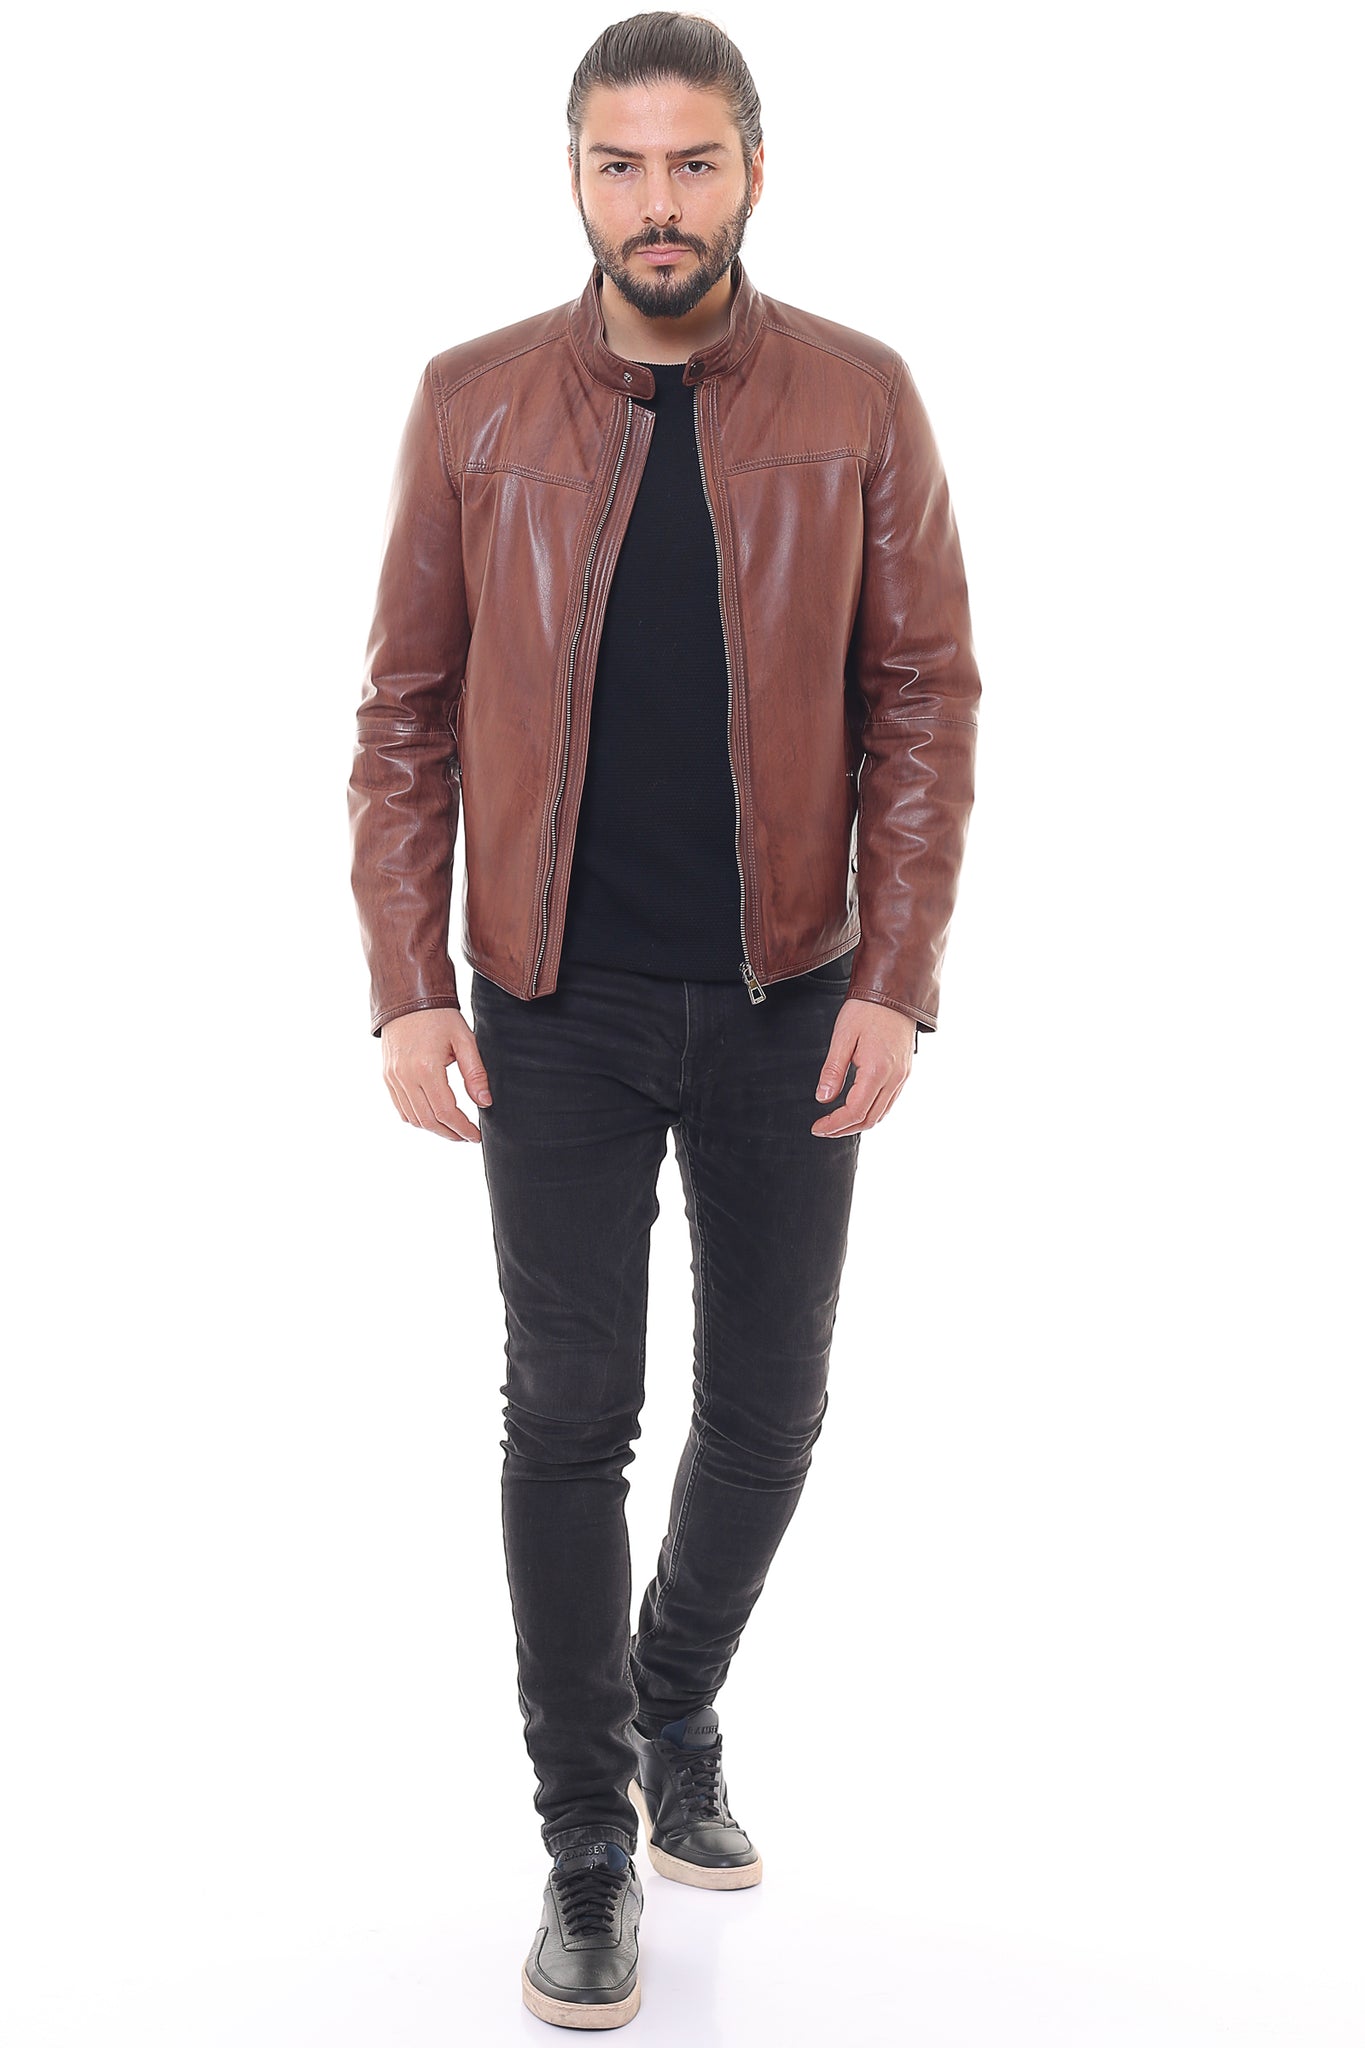 Edward Leather Jacket